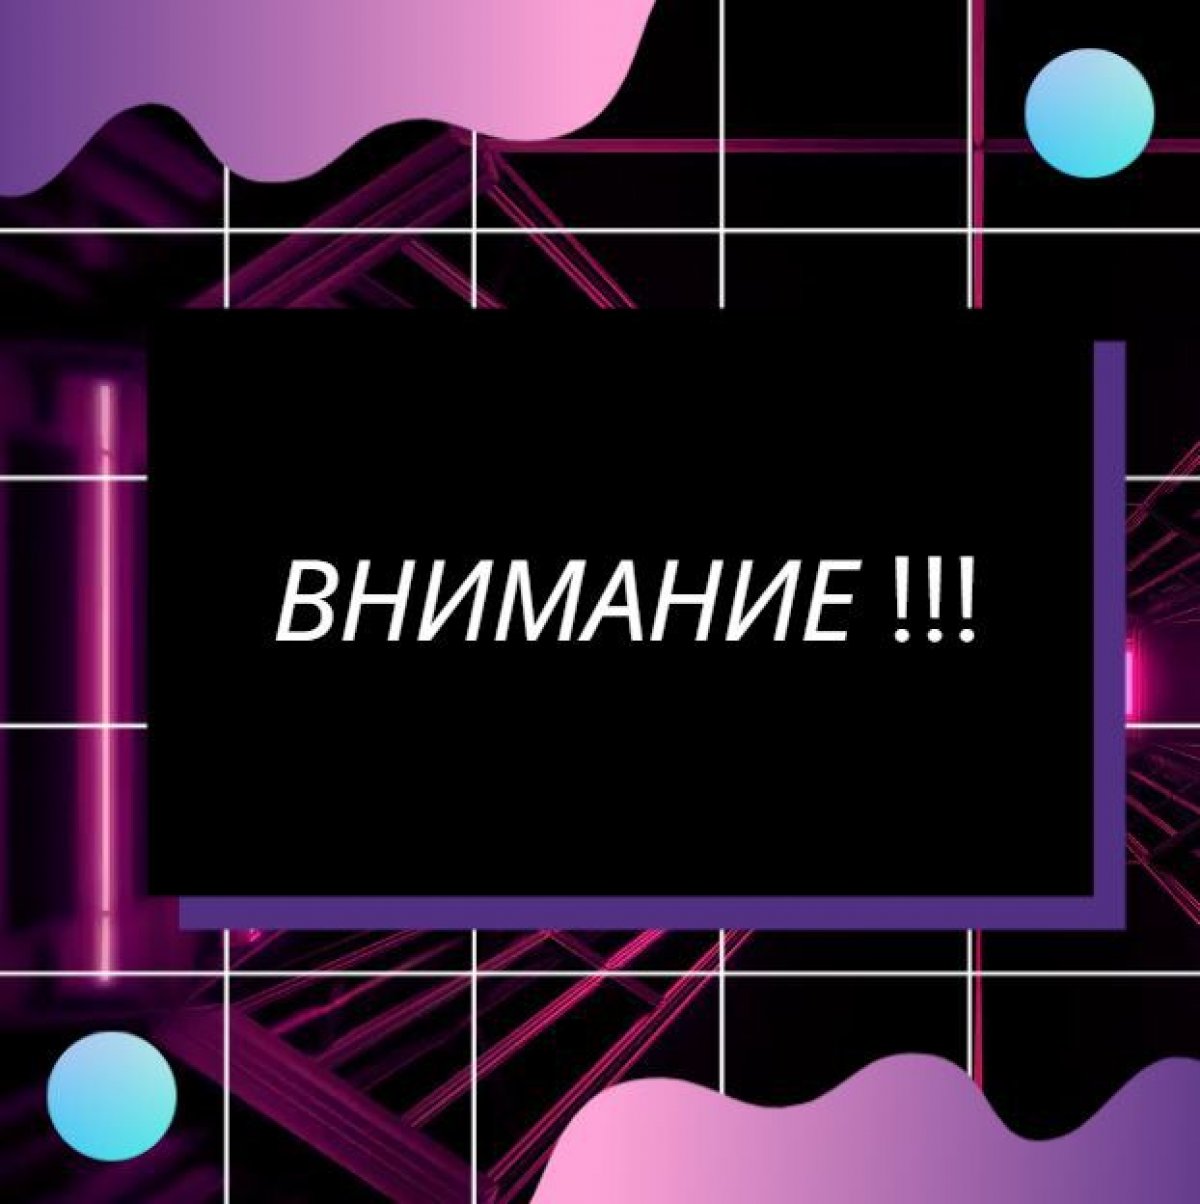 Дорогие абитуриенты, в связи с Указом мэра Москвы от 16 марта 2020 года 21_УМ день открытых дверей в нашем вузе будет проходить в формате ОНЛАЙН!